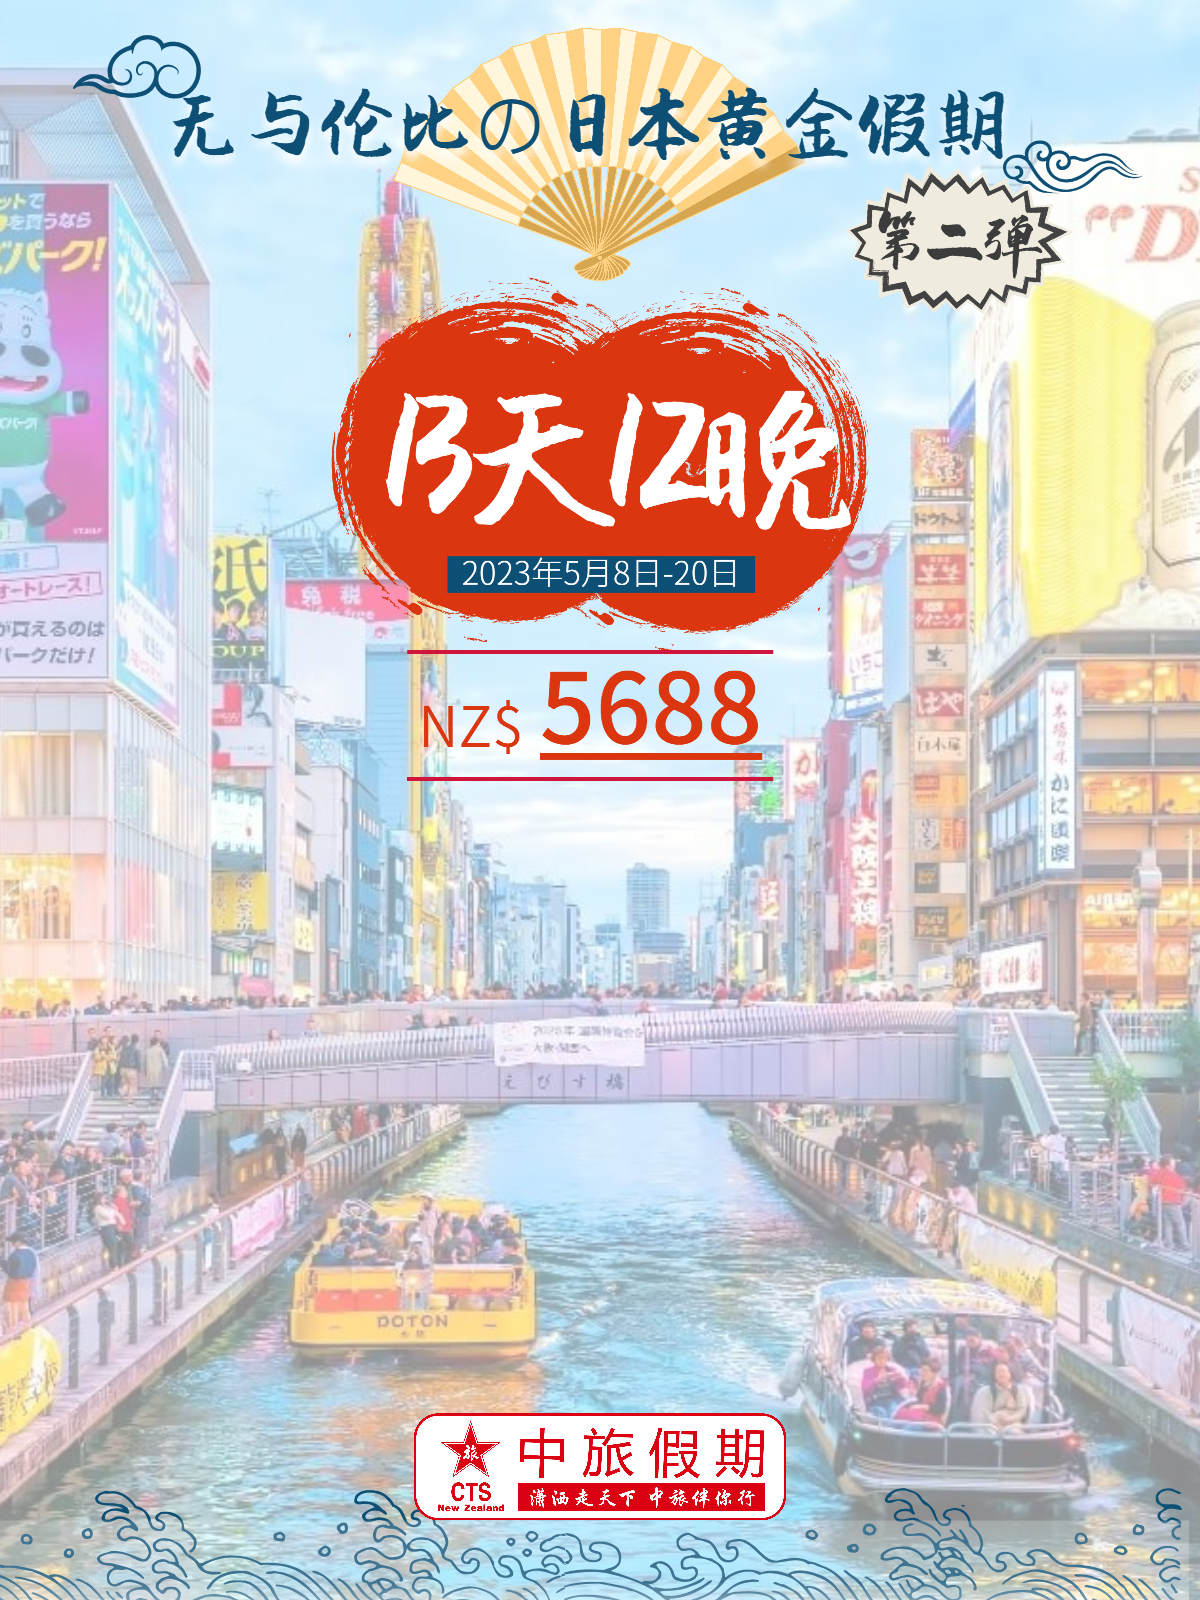 5月日本13天旅游线路 - 小红书版_0.jpg